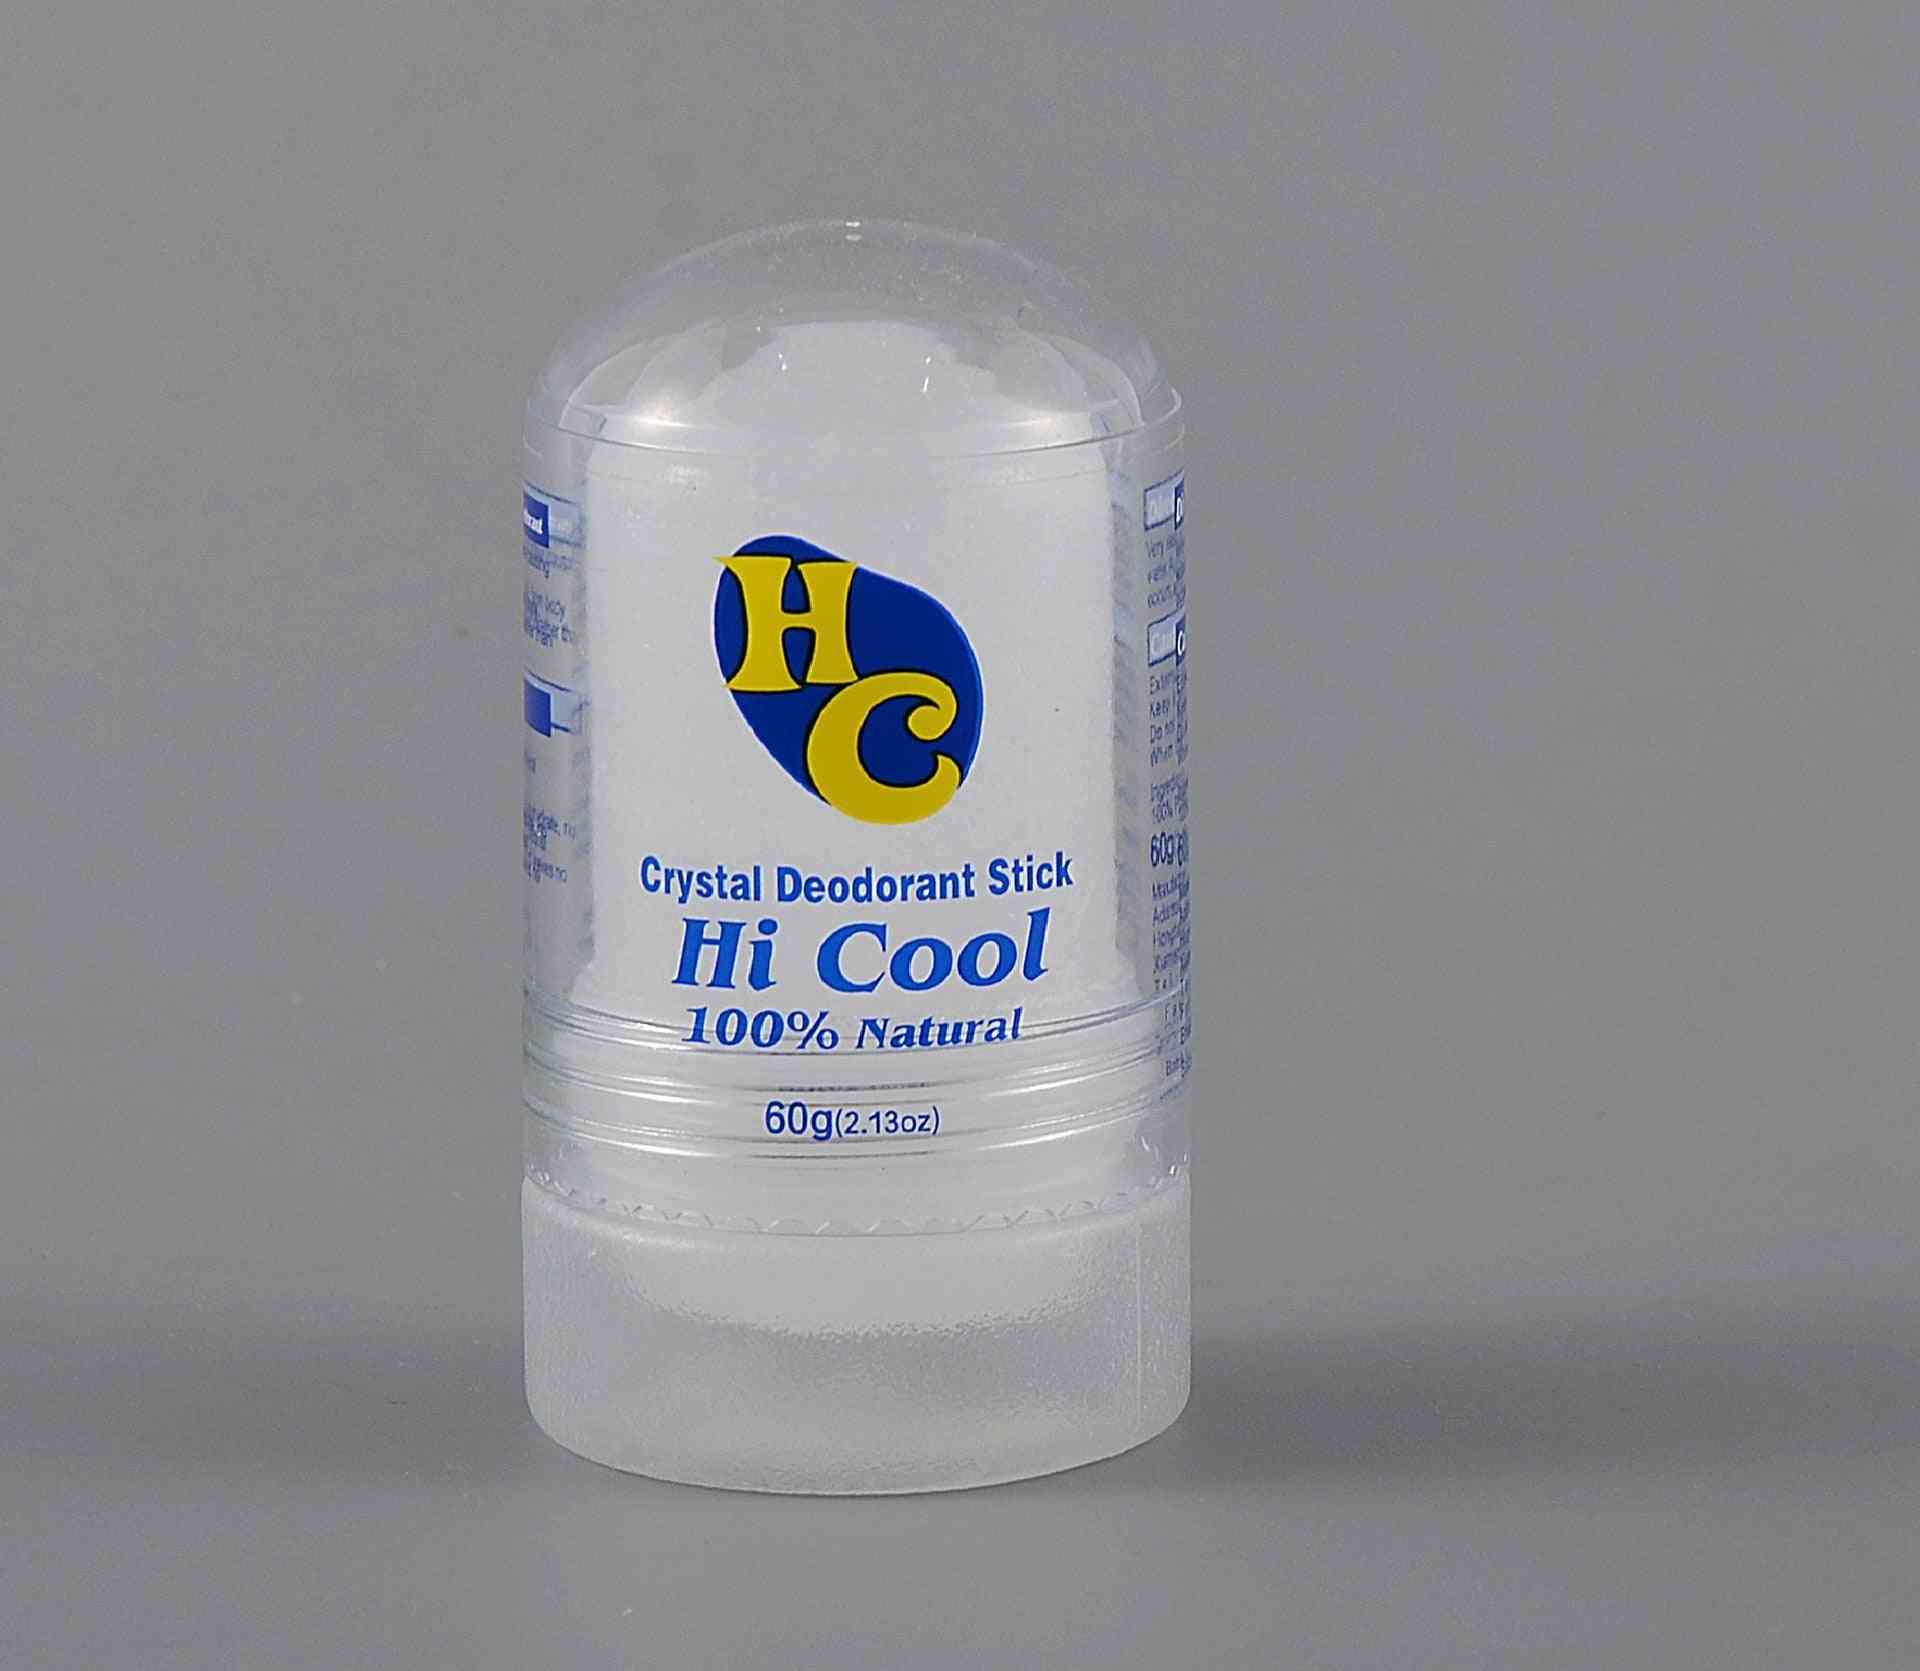 Kristall Deodorant Stick-Achselgeruchsentferner, Antitranspirant für Männer und Frauen